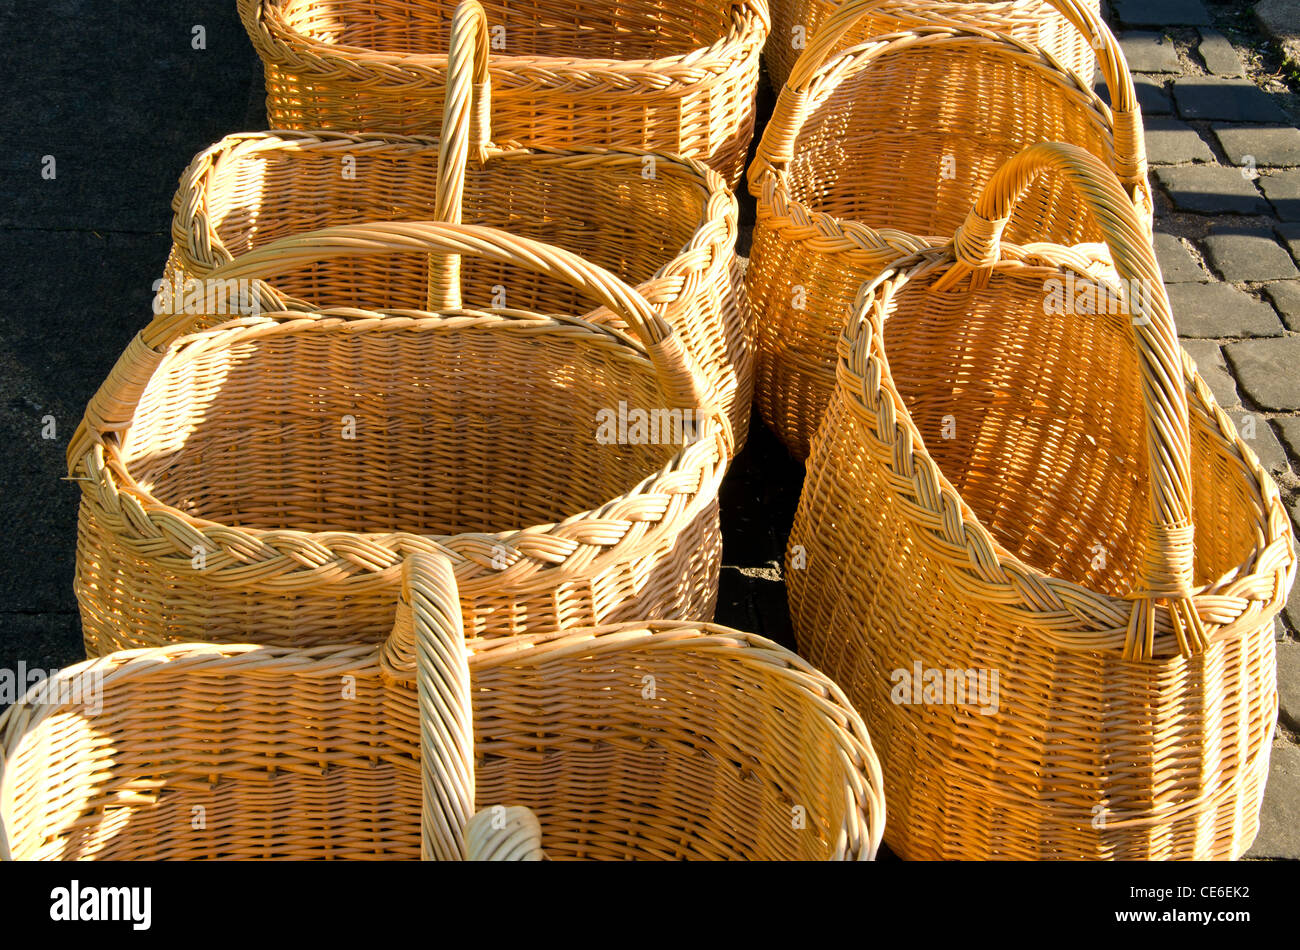 Des paniers en osier fait main en vente juste à l'extérieur Photo Stock -  Alamy